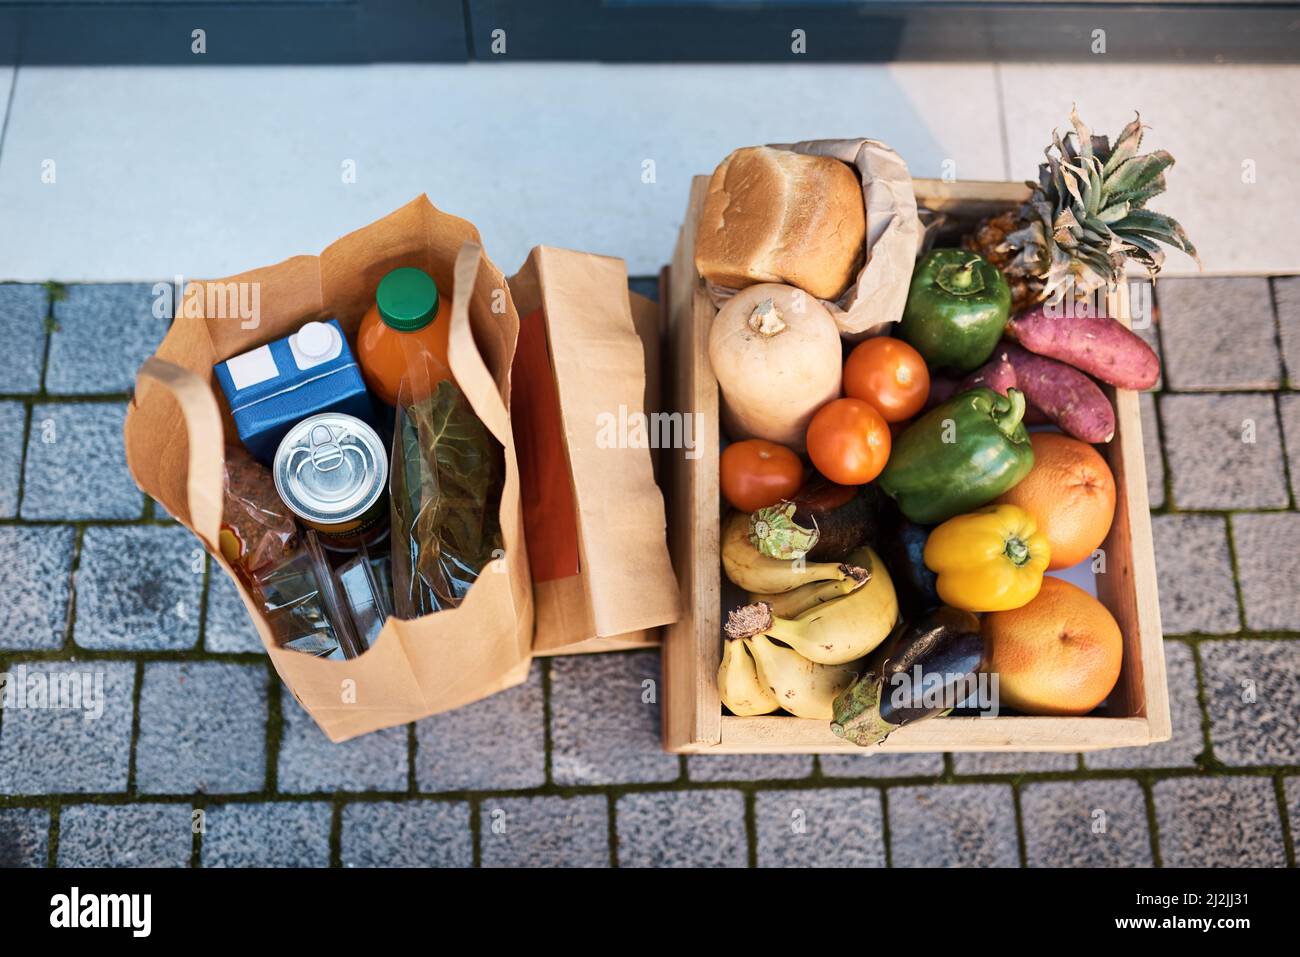 Wir liefern, damit Sie zu Hause sicher bleiben können. Aufnahme von Lebensmitteln, die an die Tür eines Kunden geliefert wurden. Stockfoto